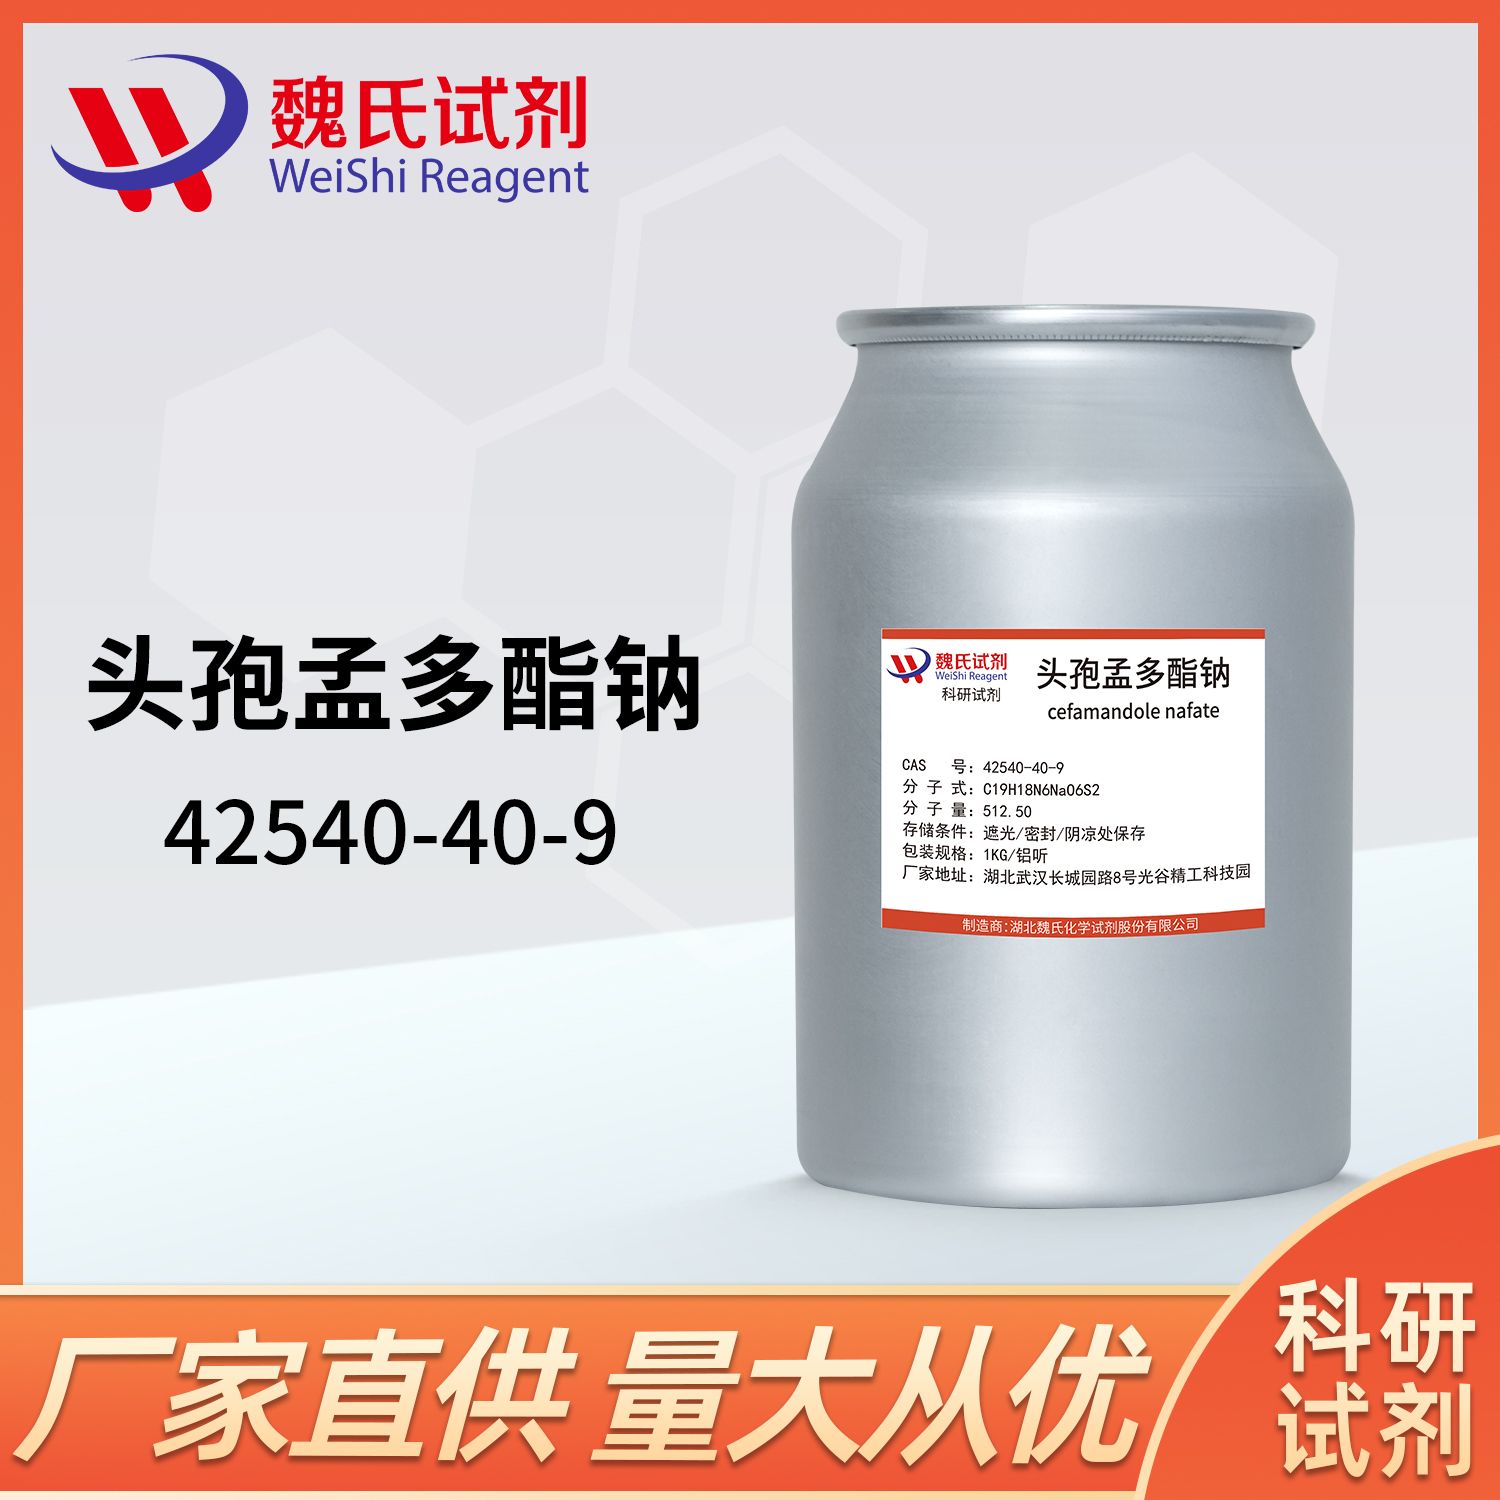 42540-40-9/头孢孟多酯钠/Cemandil sodium salt